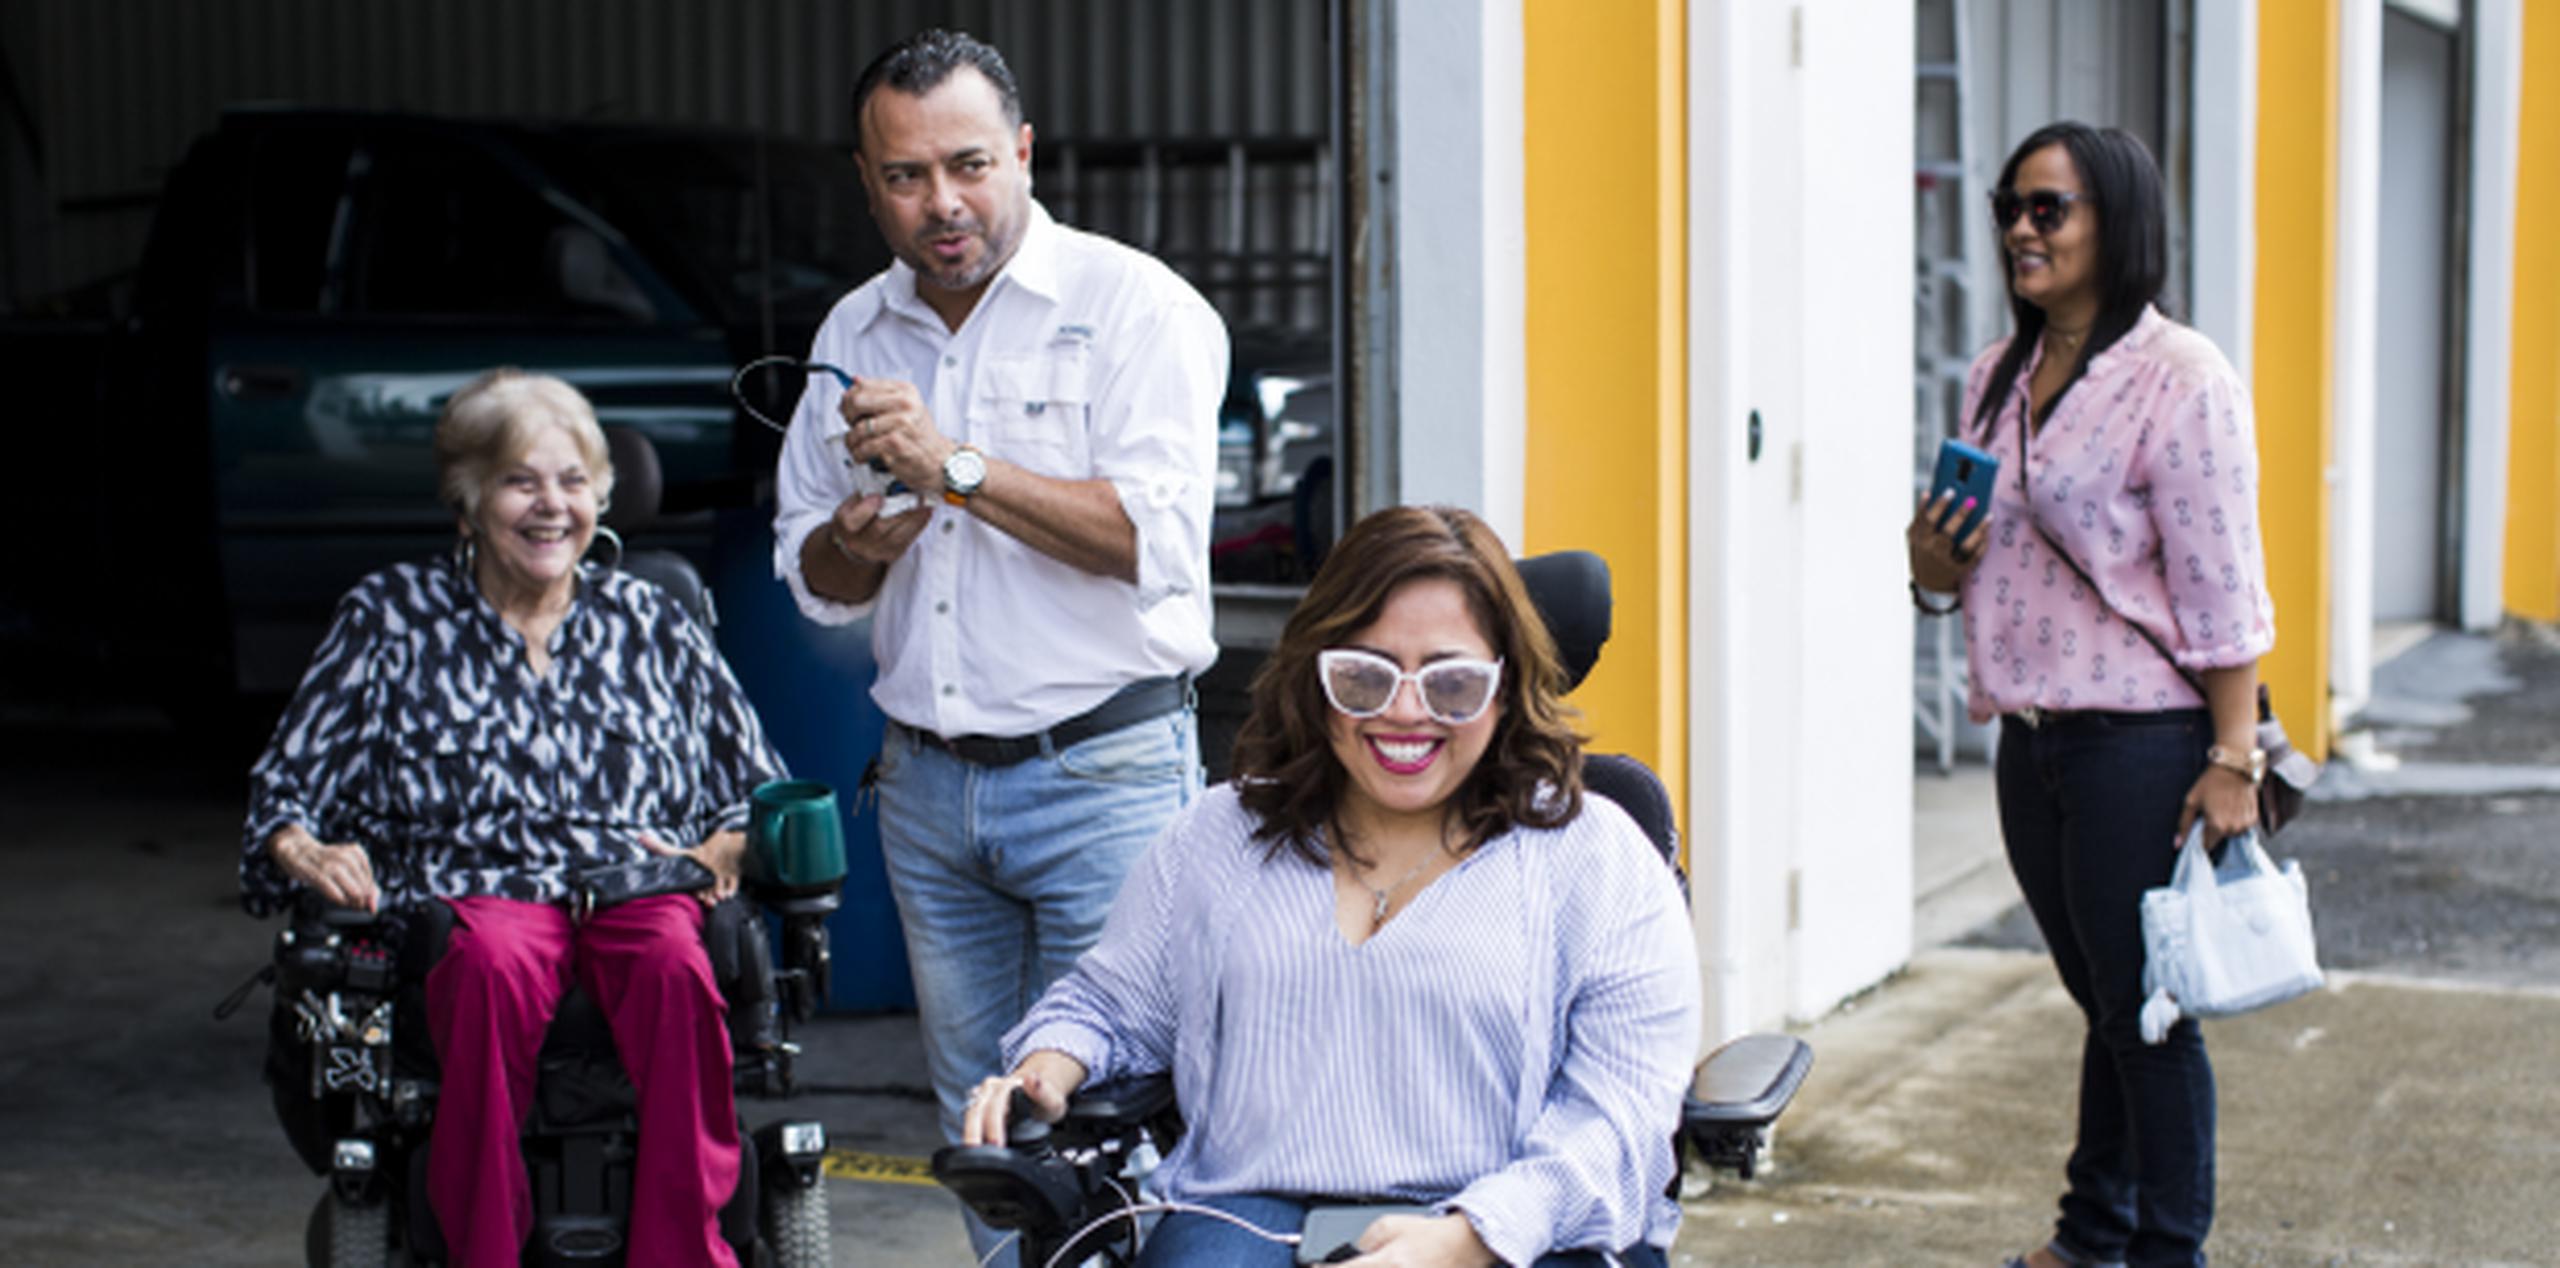 Jaime Rivera adapta vehículos y brinda mantenimiento equipo clave para personas con problemas de movilidad. (Erika Rodríguez / Especial para Primera Hora)